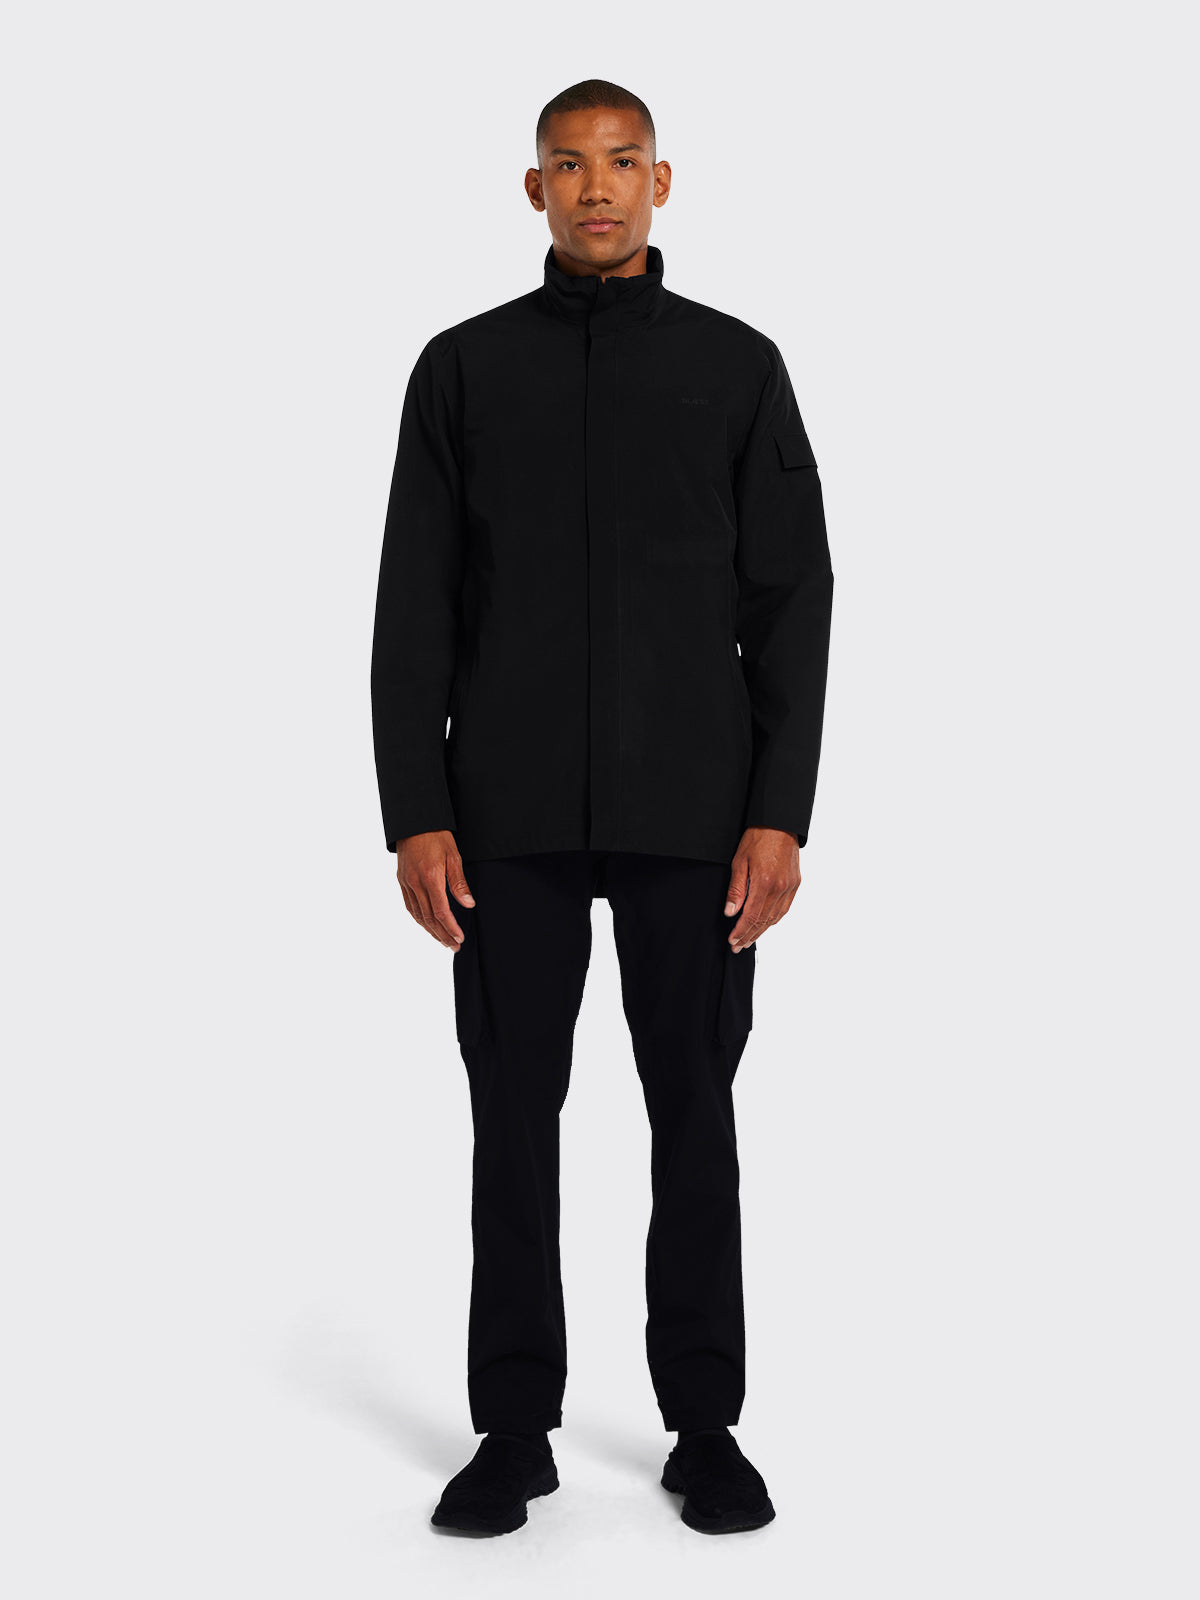 Man dressed in Godøy jacket from Blæst in Black